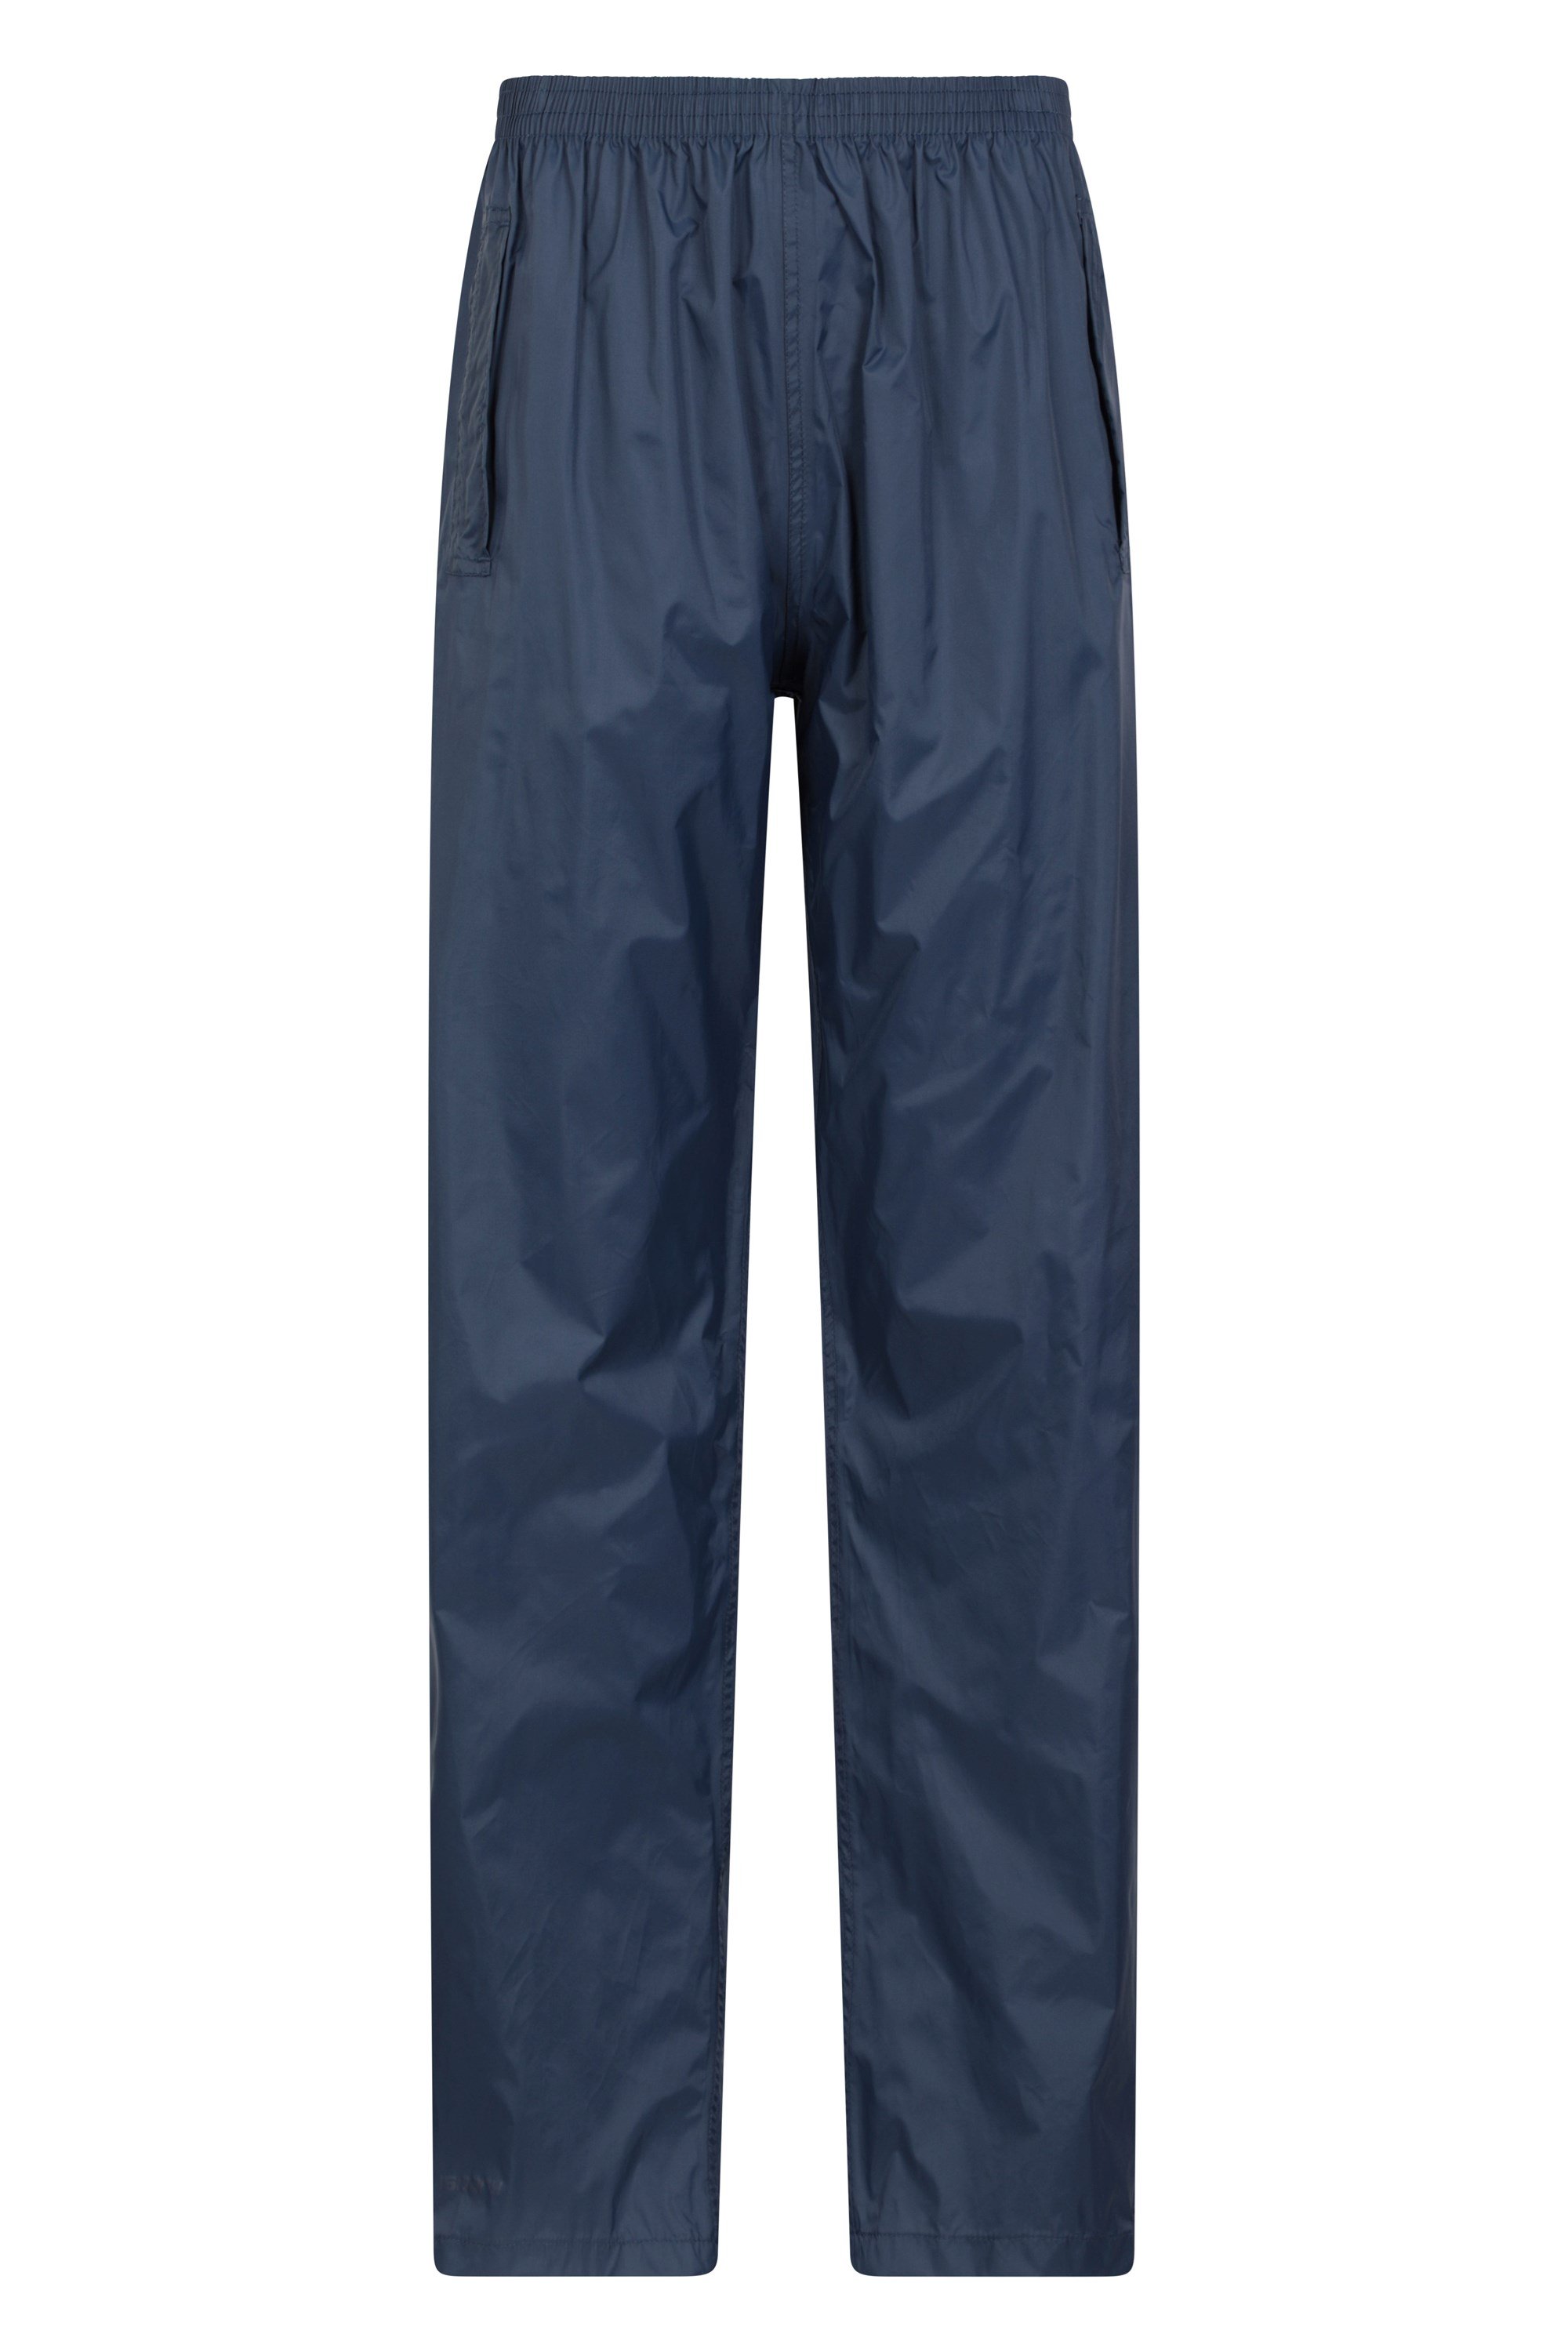 Montane Minimus Pants - Waterproof Trousers Women's | Buy online |  Alpinetrek.co.uk